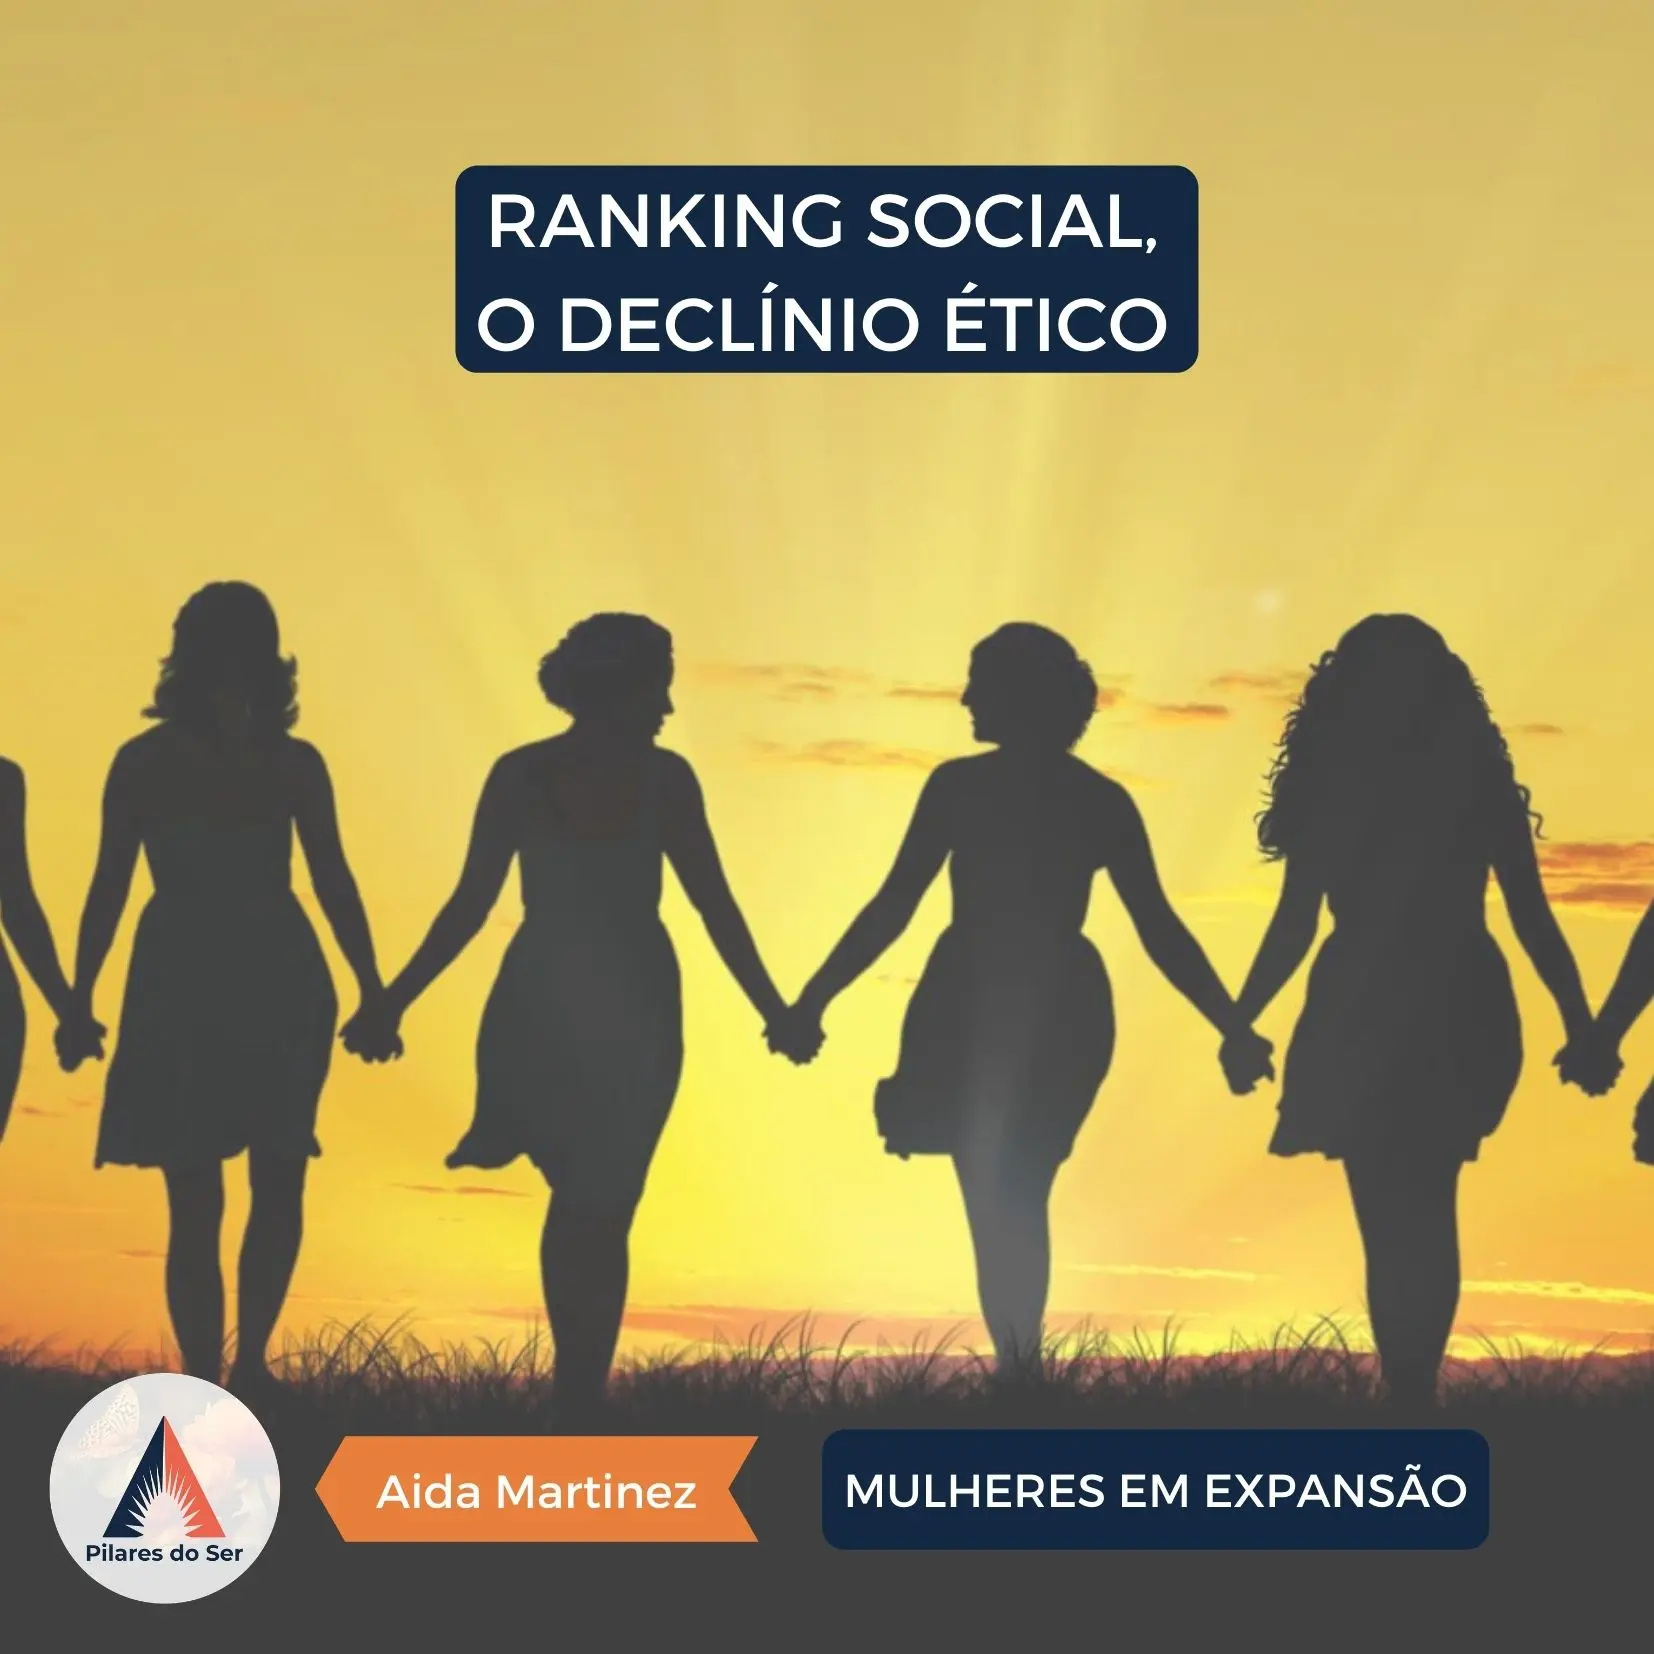 Ranking Social, o Declínio Ético